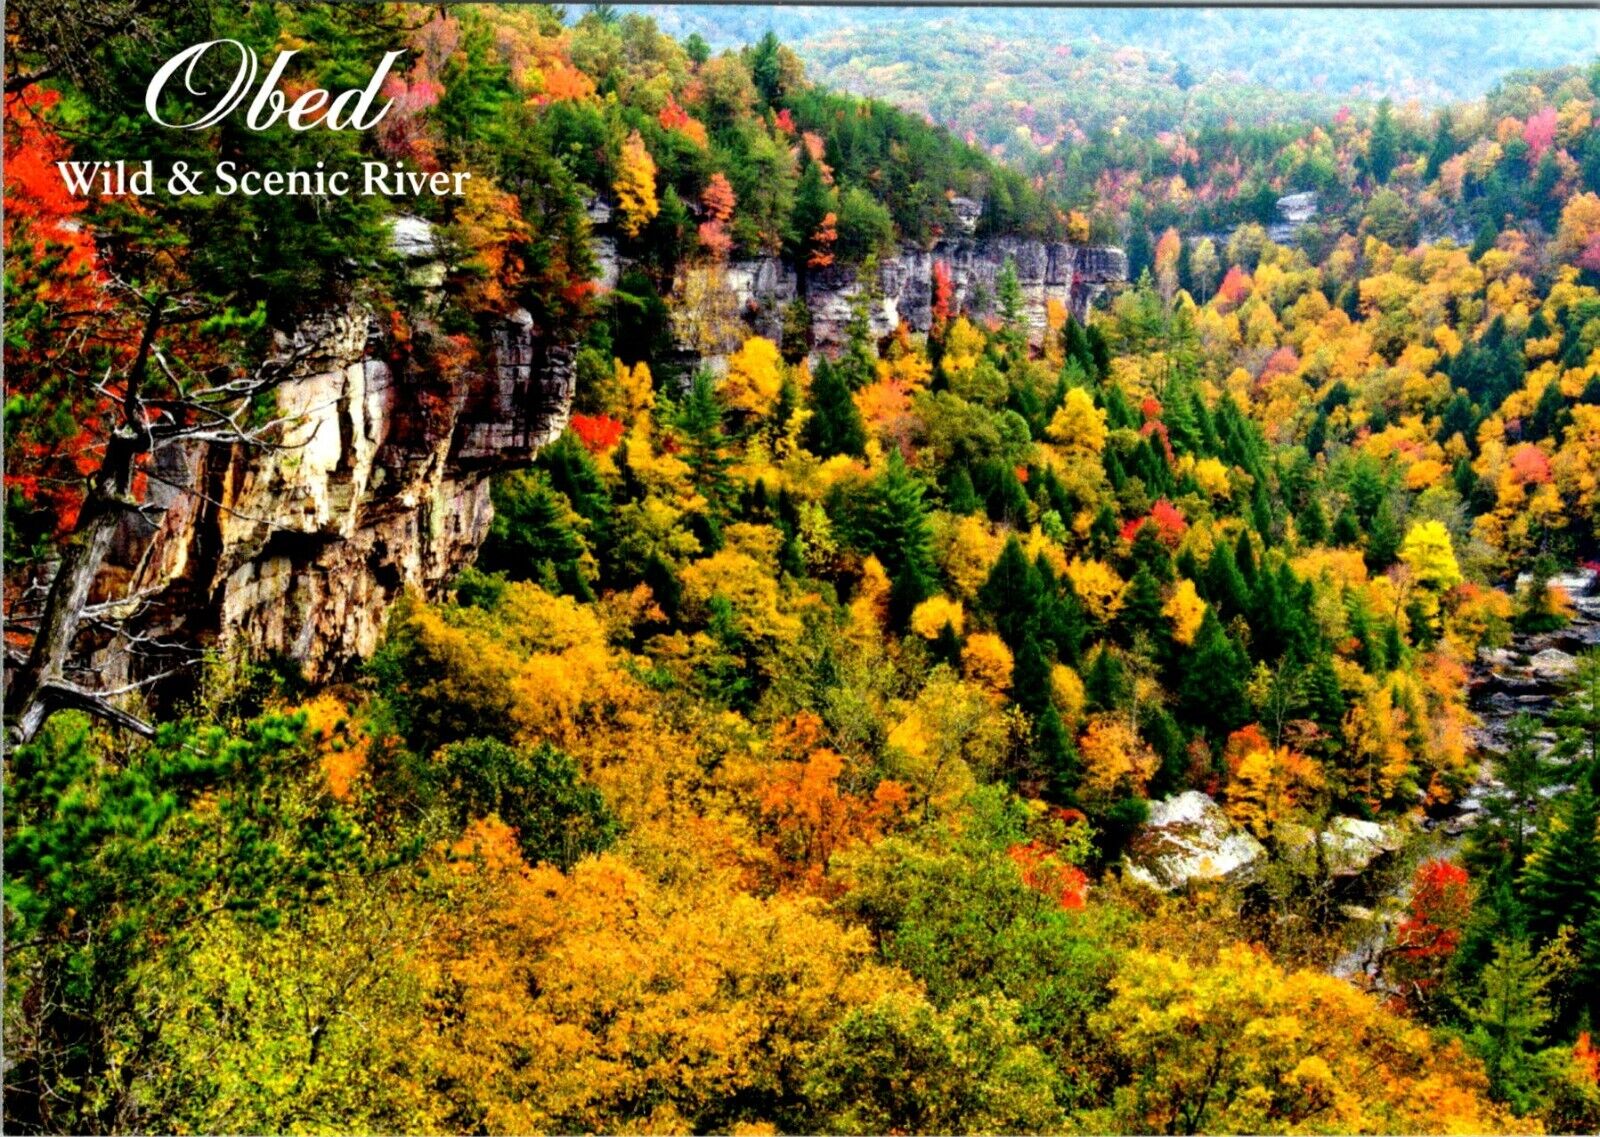 Obed Wild & Scenic River Fall Season photo postcard